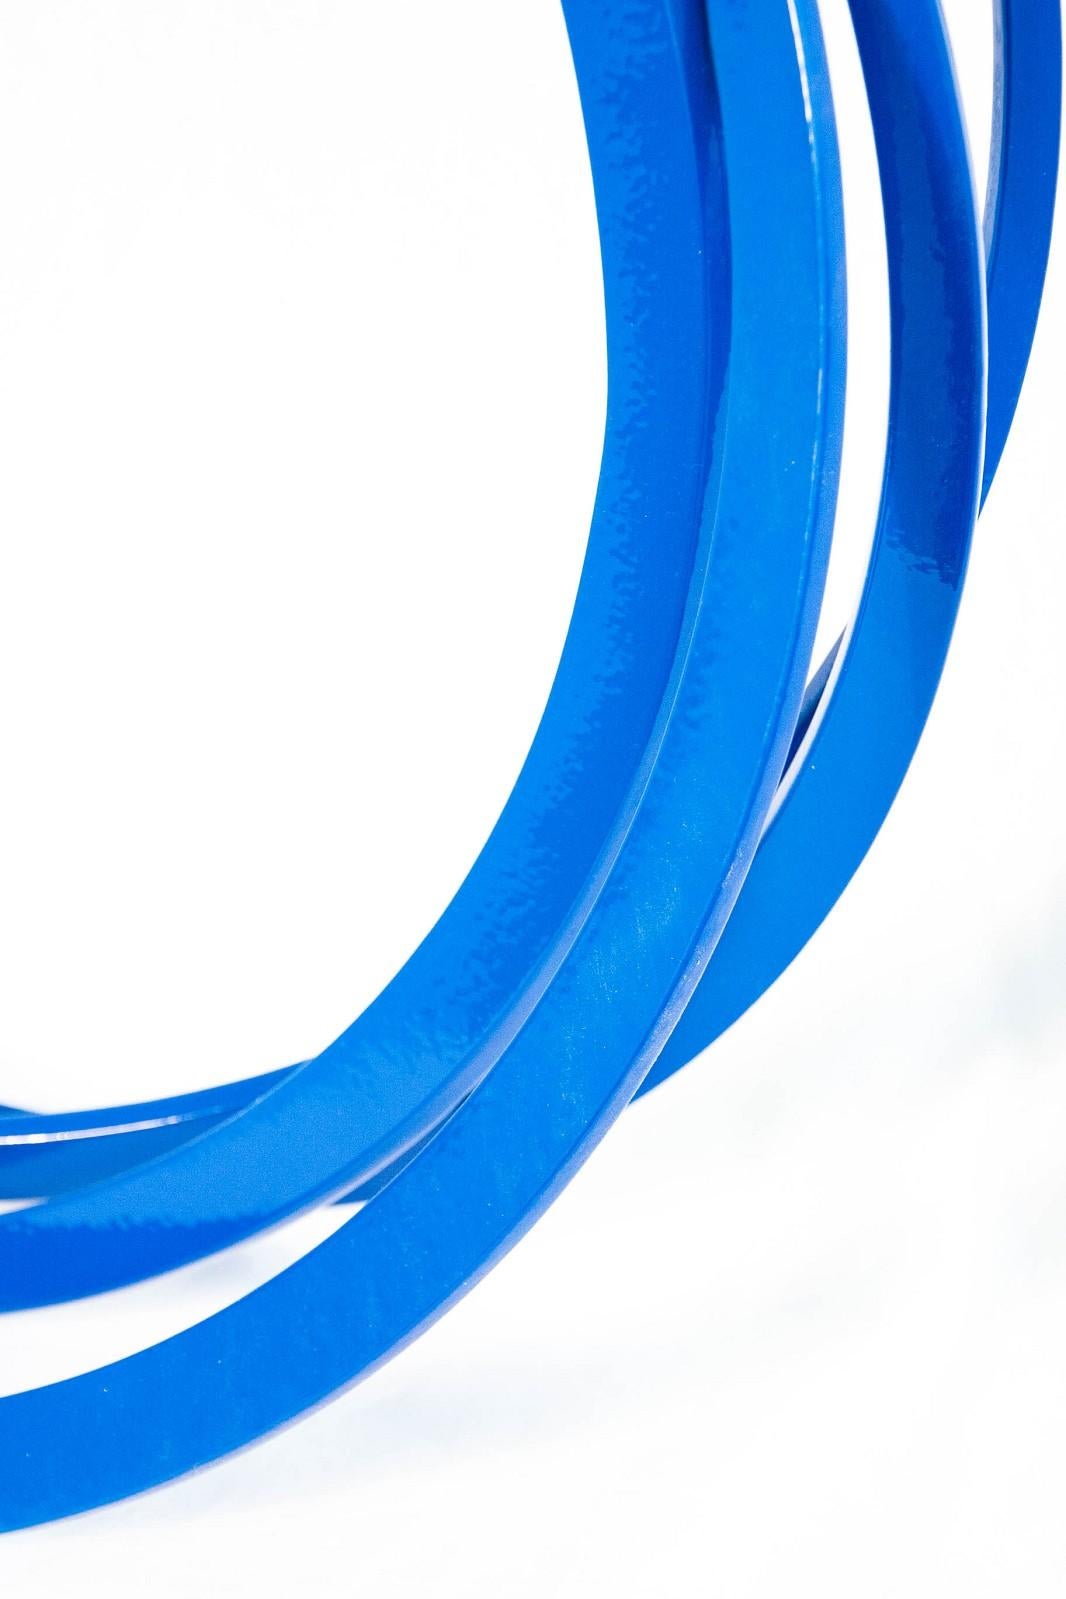 Runde und runde blaue Wandskulptur – glänzend, Kreise, Stahl, geometrische abstrakte Wandskulptur (Weiß), Abstract Sculpture, von Shayne Dark